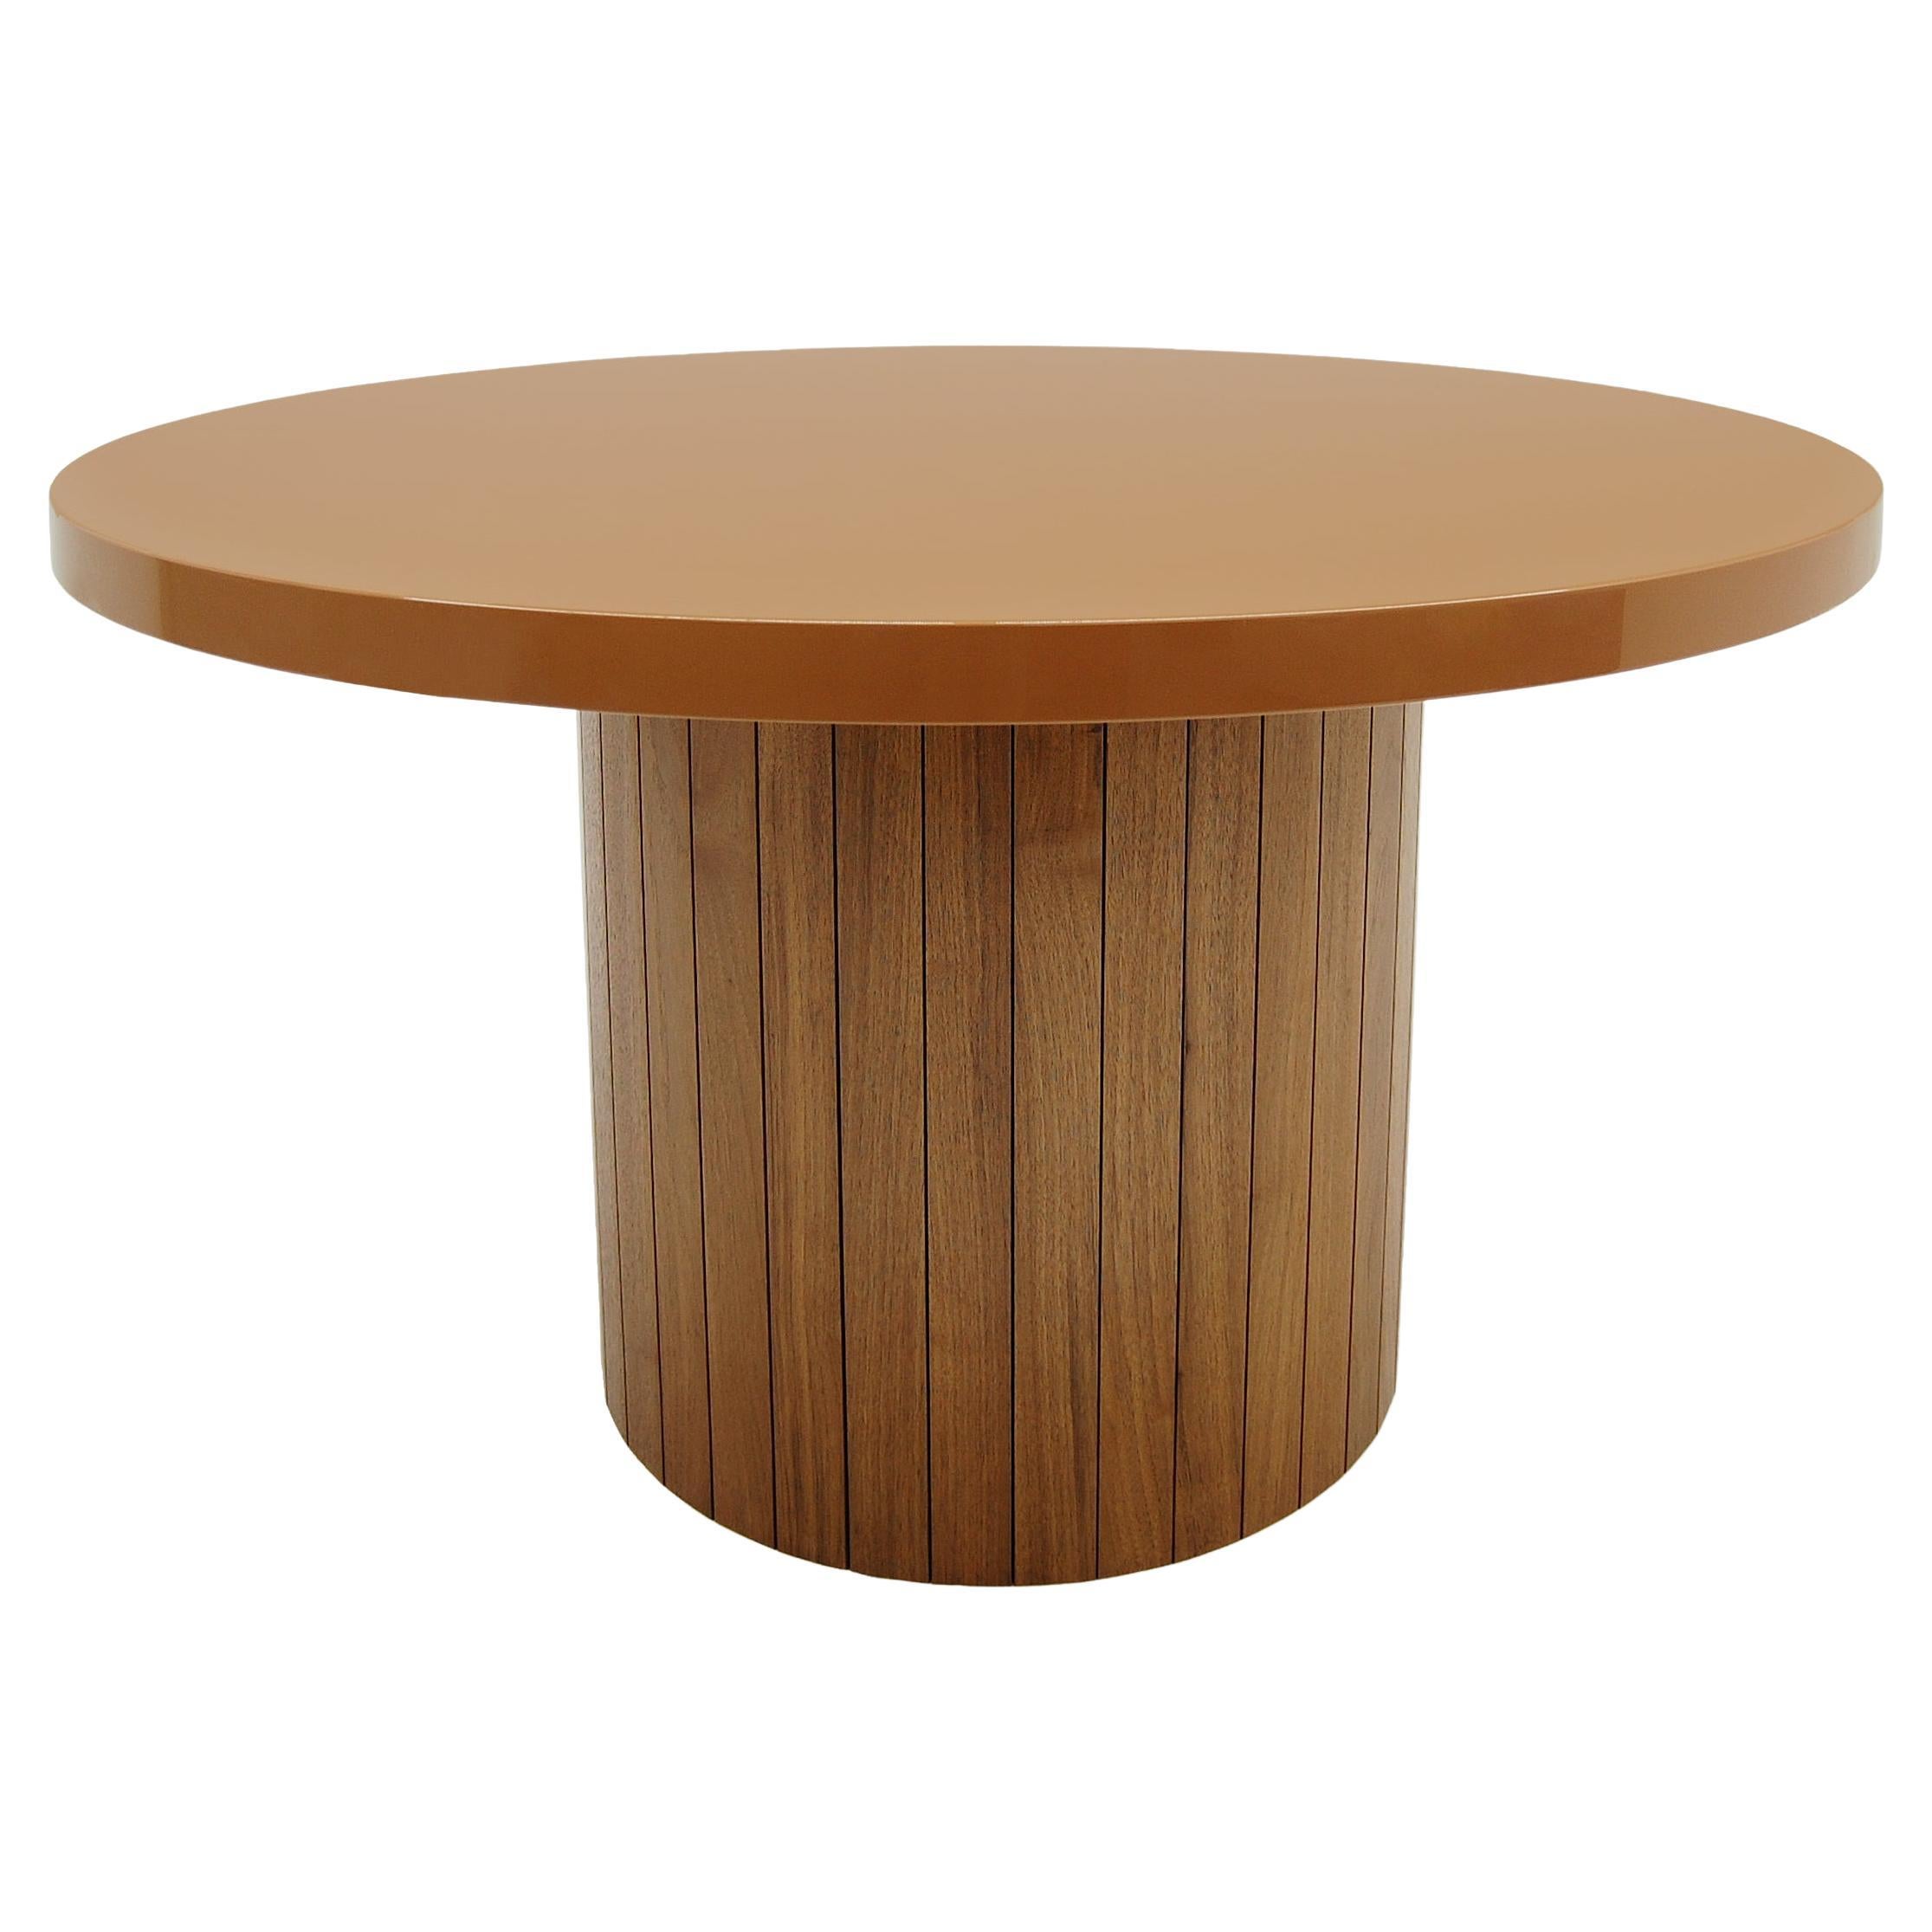 Plank-Tisch mit abgerundeter Lackplatte und Holzsockel aus Nussbaumholz, maßgefertigt auf Bestellung 